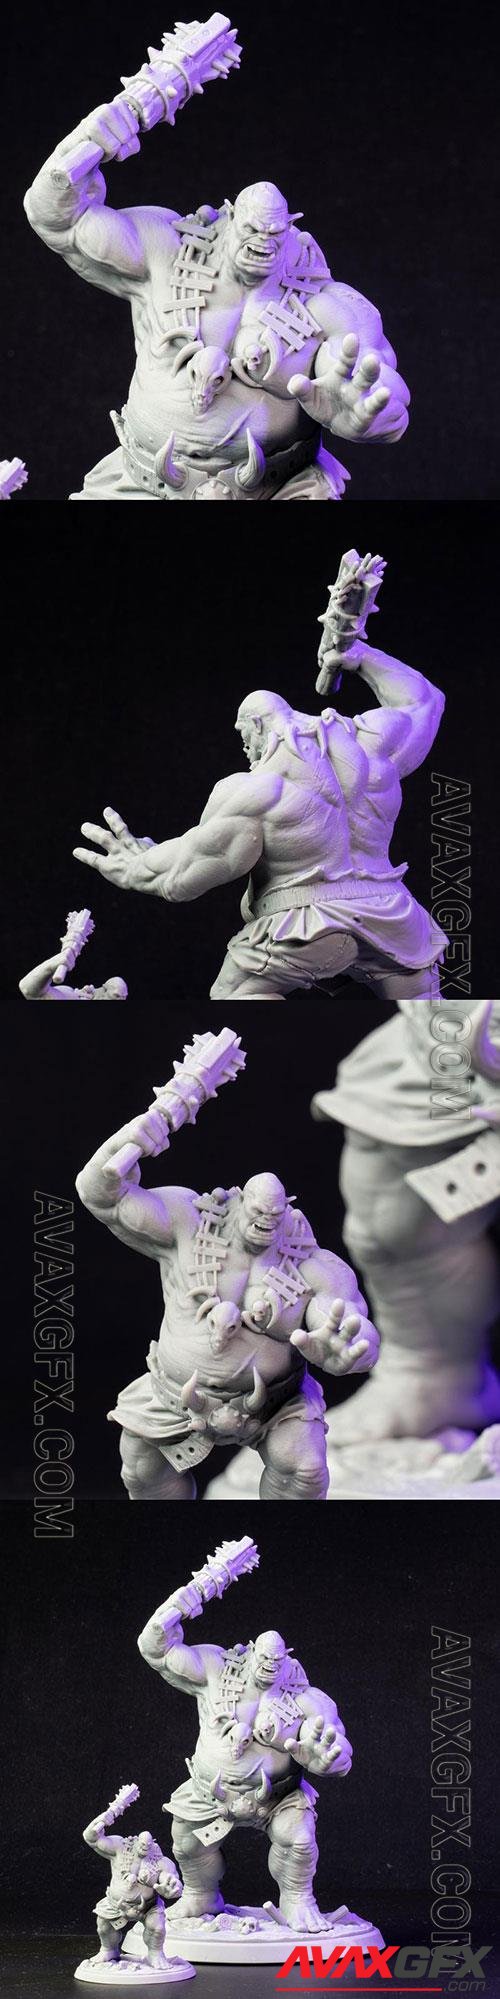 3D Print Ogre